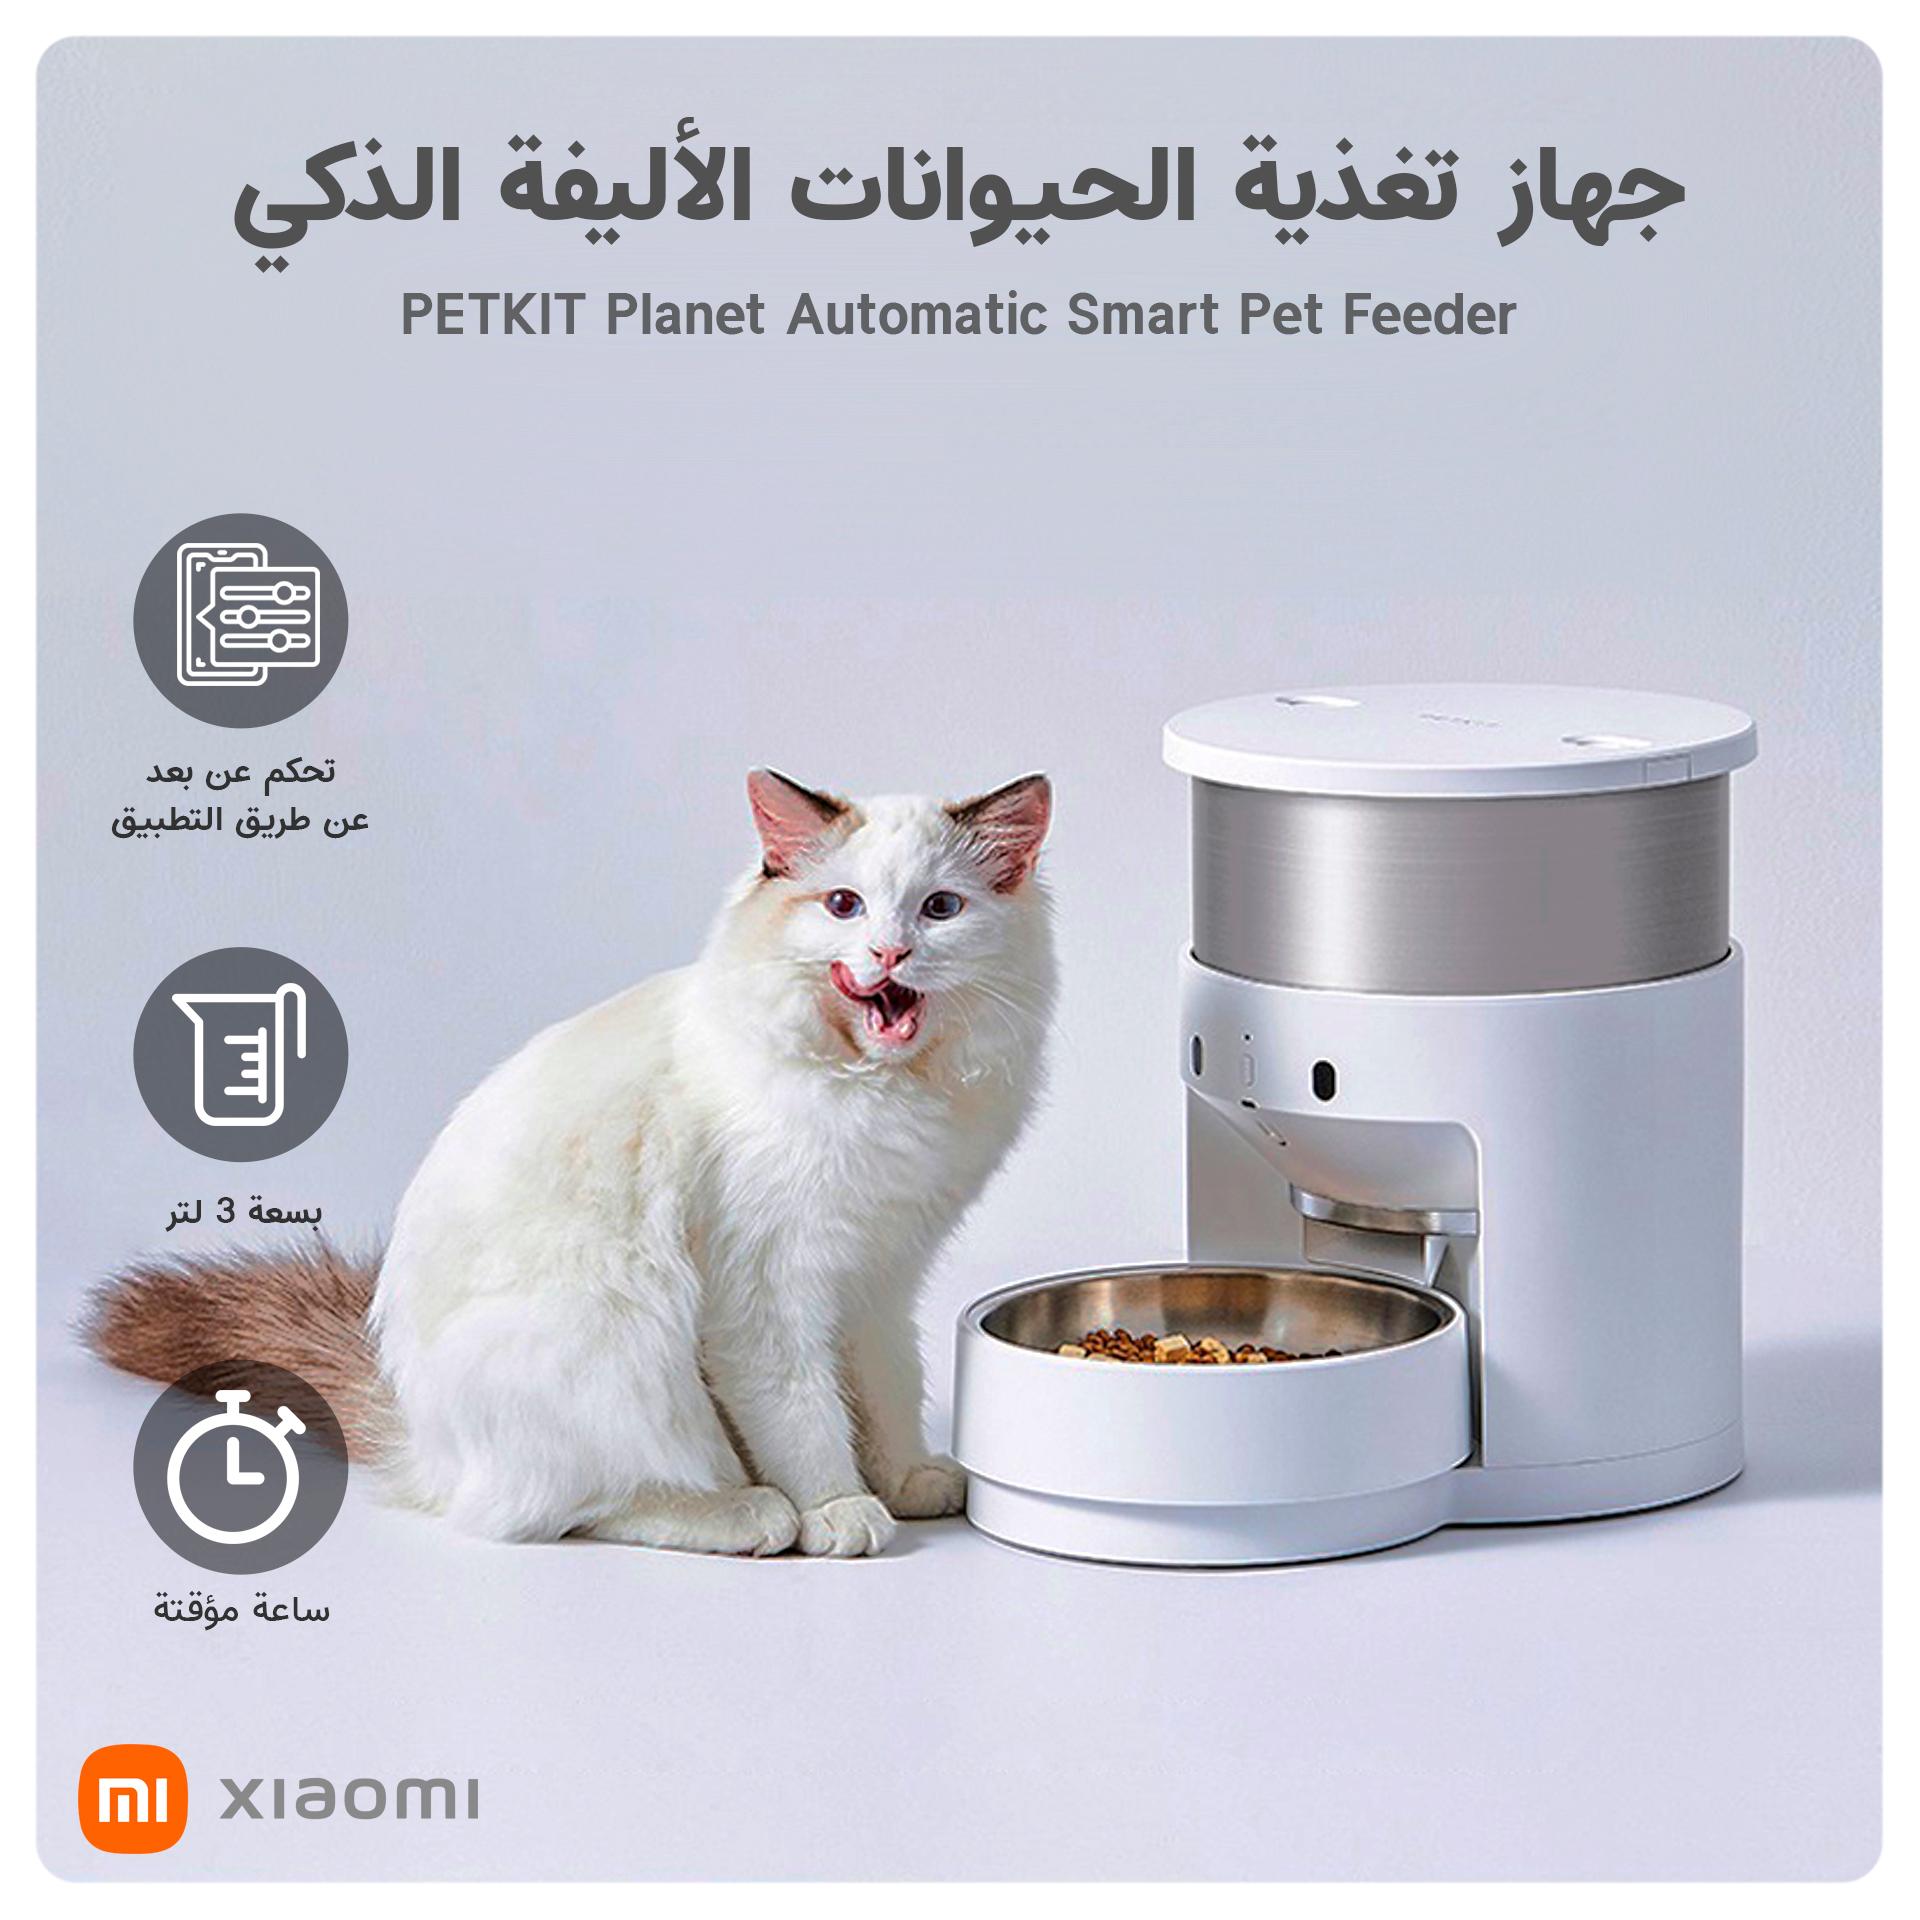 جهاز تغذية الحيوانات الأليفة الذكي PETKIT Planet Automatic Smart Pet Feeder بسعة 3 لتر